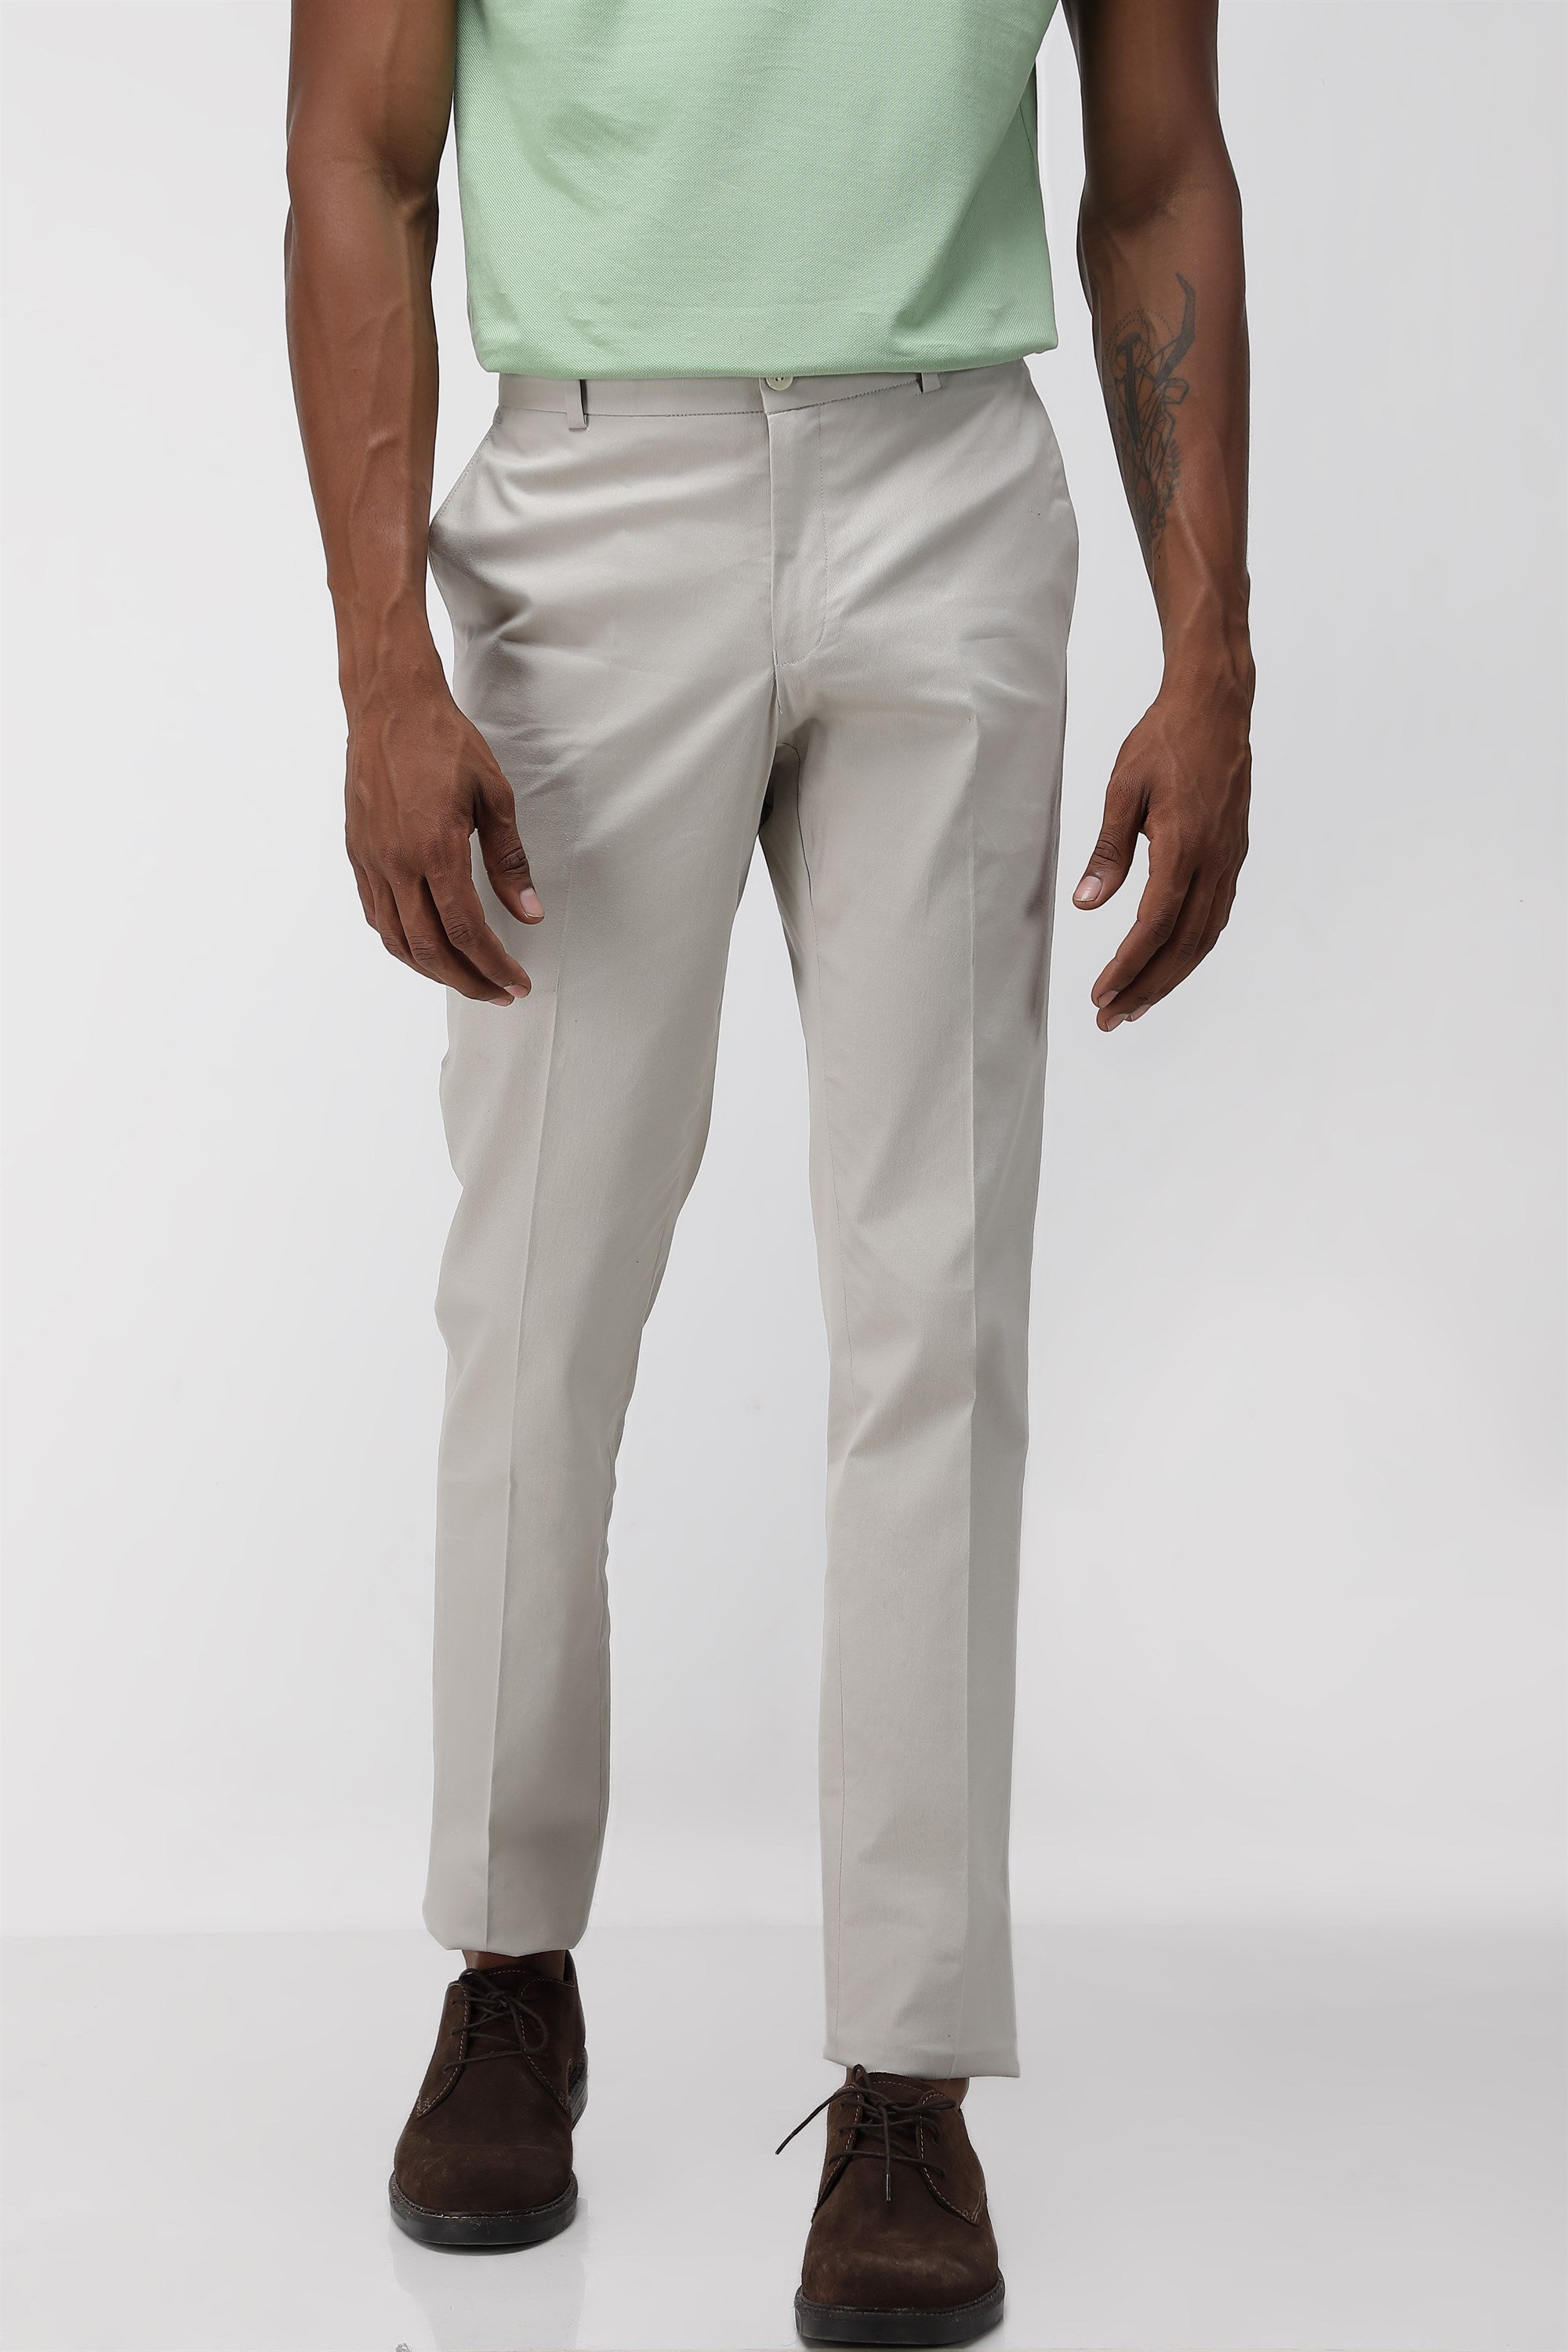 Ralph Lauren Stretch Slim Fit Corduroy Pant - ShopStyle